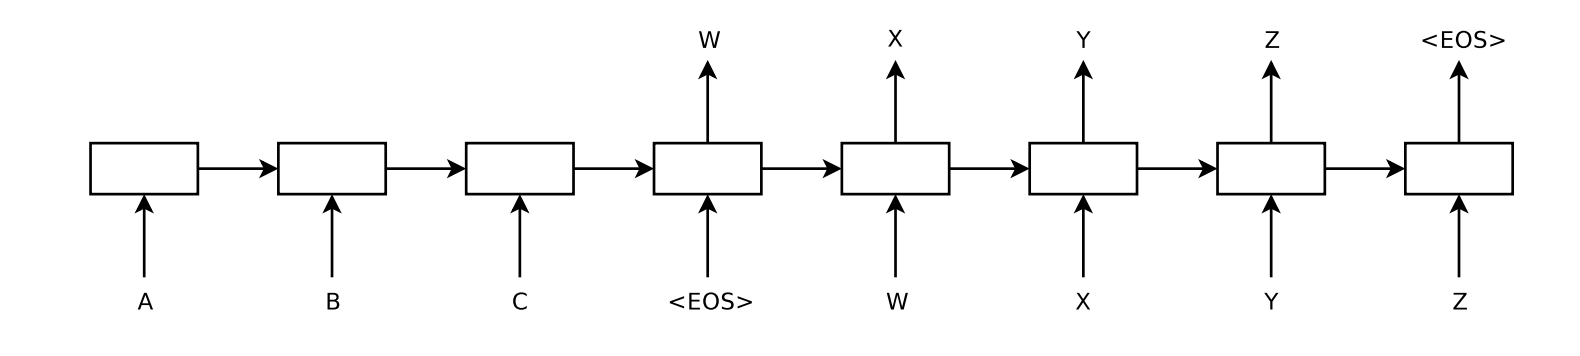 Figure 3: Encoder-Decoder Architecture. Source: [4]